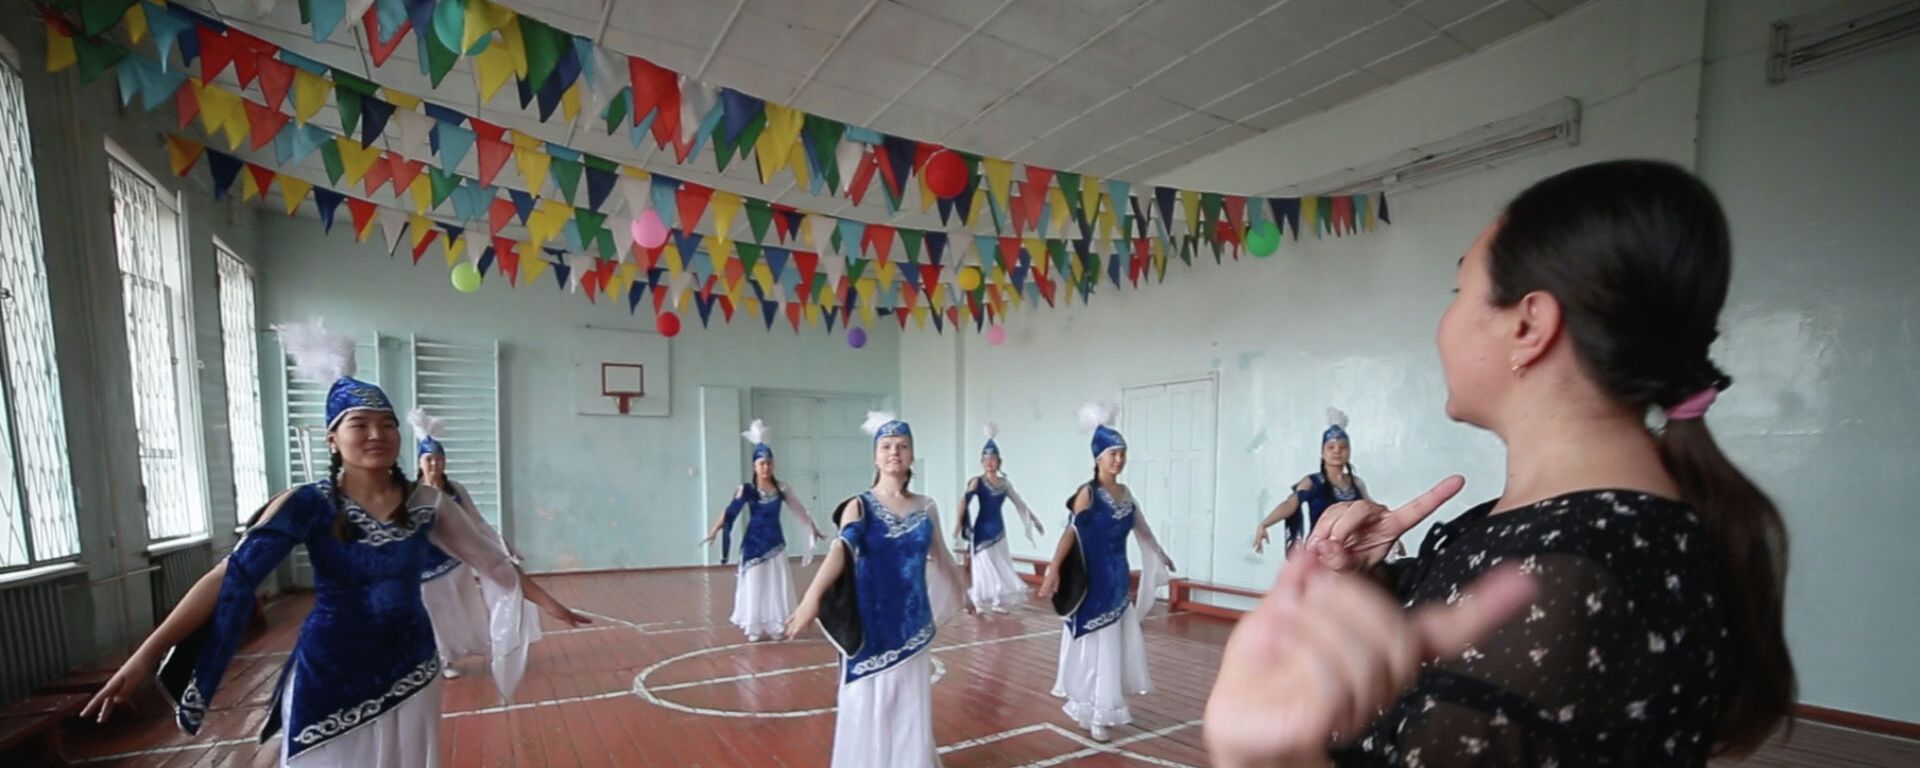 Никогда не слышали музыку, но танцуют. Видео про бишкекчан, ломающее шаблоны - Sputnik Кыргызстан, 1920, 25.02.2021